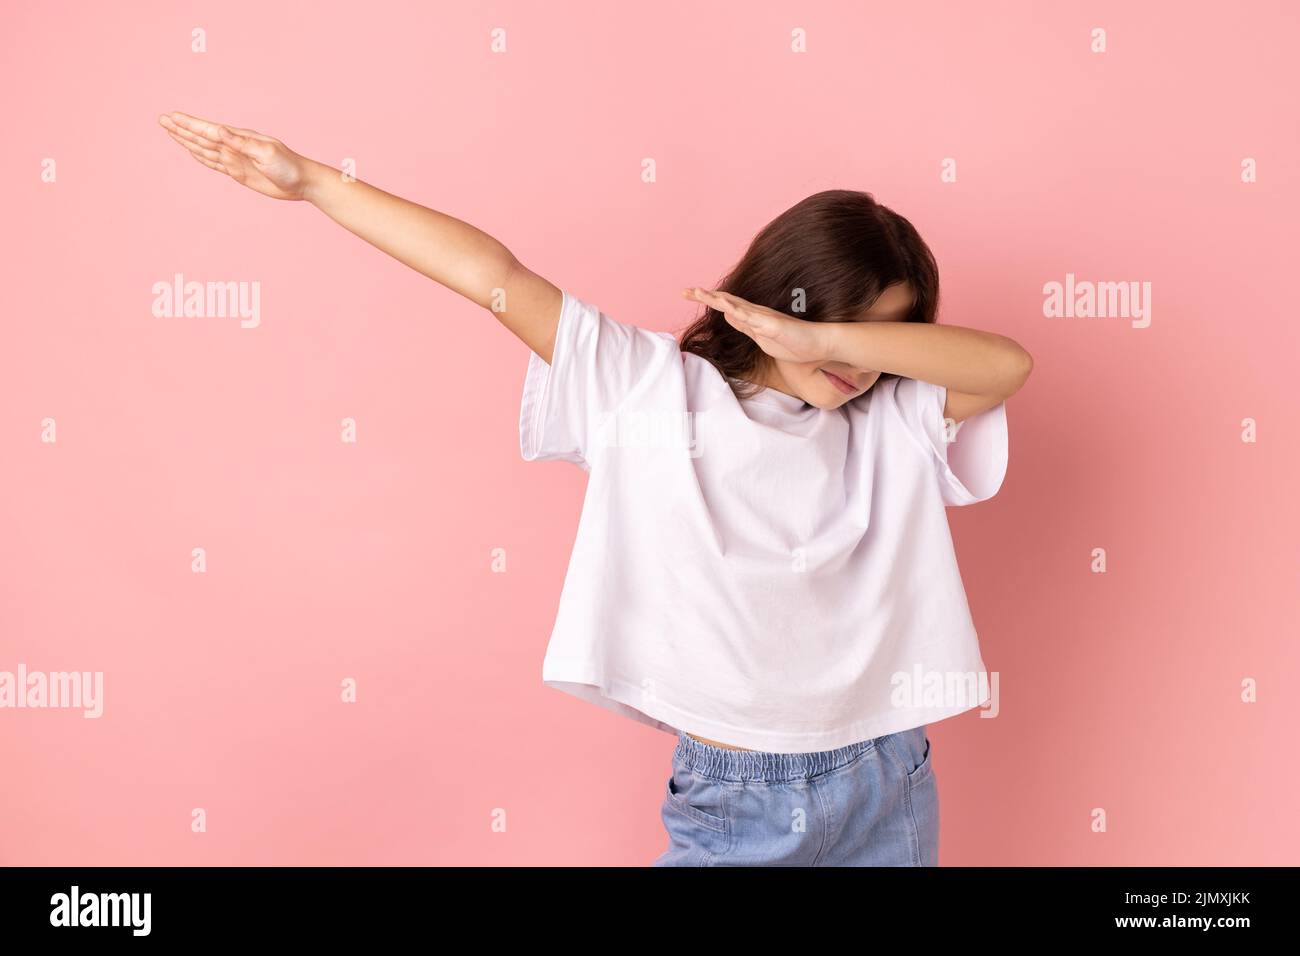 Retrato de niña con camiseta blanca que muestra la pose de baile de dab, el famoso meme de triunfo de Internet, realizando tendencias diabólicas con gesto de la mano. Estudio de interior grabado aislado sobre fondo rosa. Foto de stock